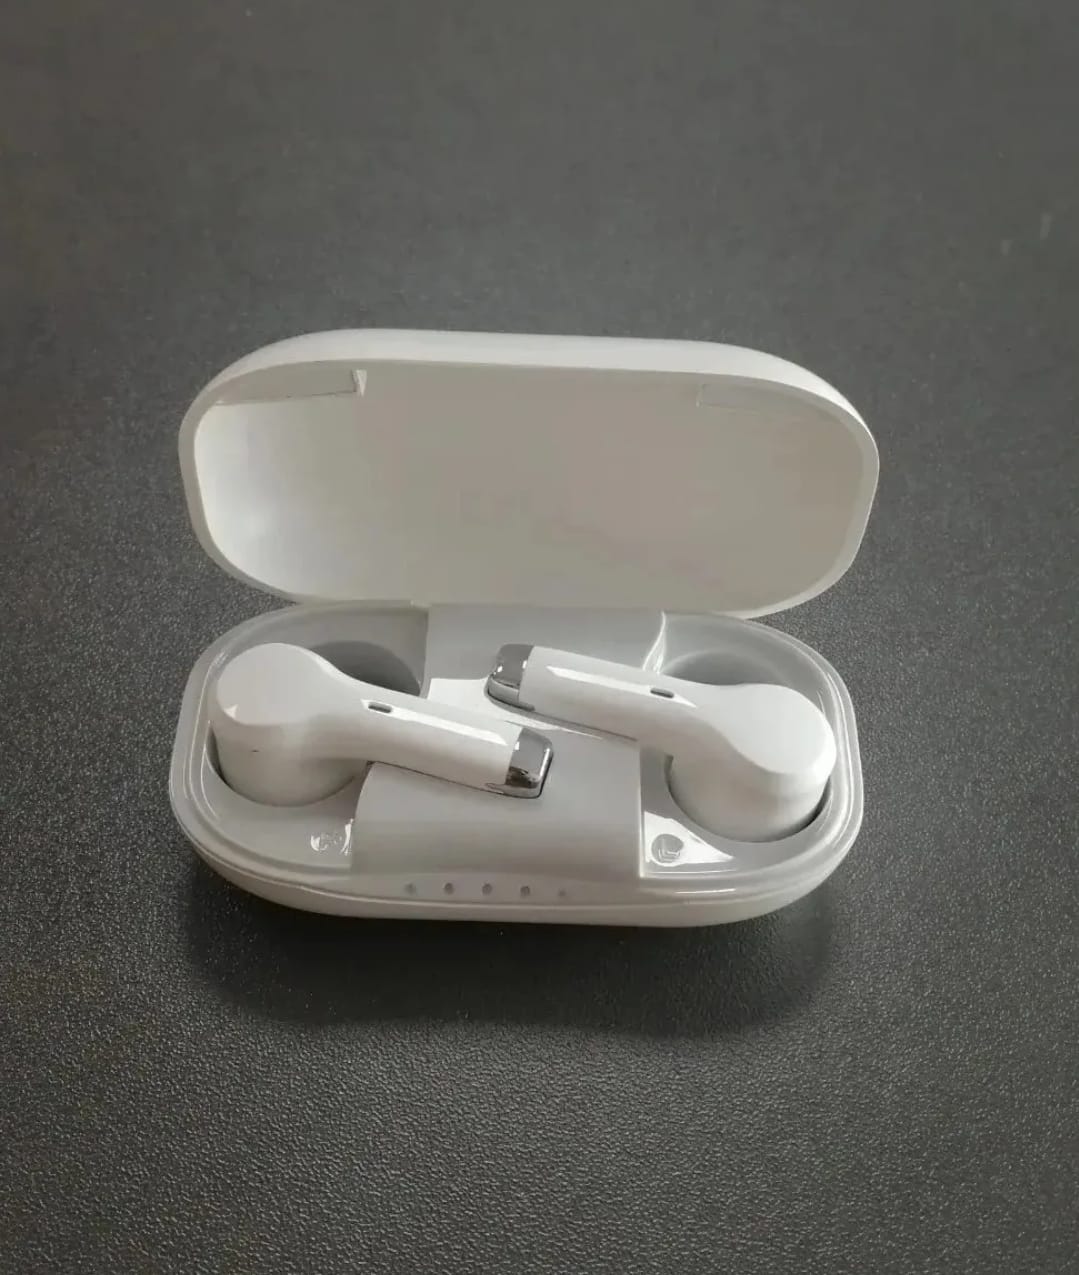 eEAR®-TWS-BT-001 Hörgeräte im Airpod-Stil, sehr diskret, sehen nicht wie typische Hörgeräte aus, sondern eher wie modische Airpods Bluetooth, wie sie von allen großen Mobiltelefonmarken geliefert werden